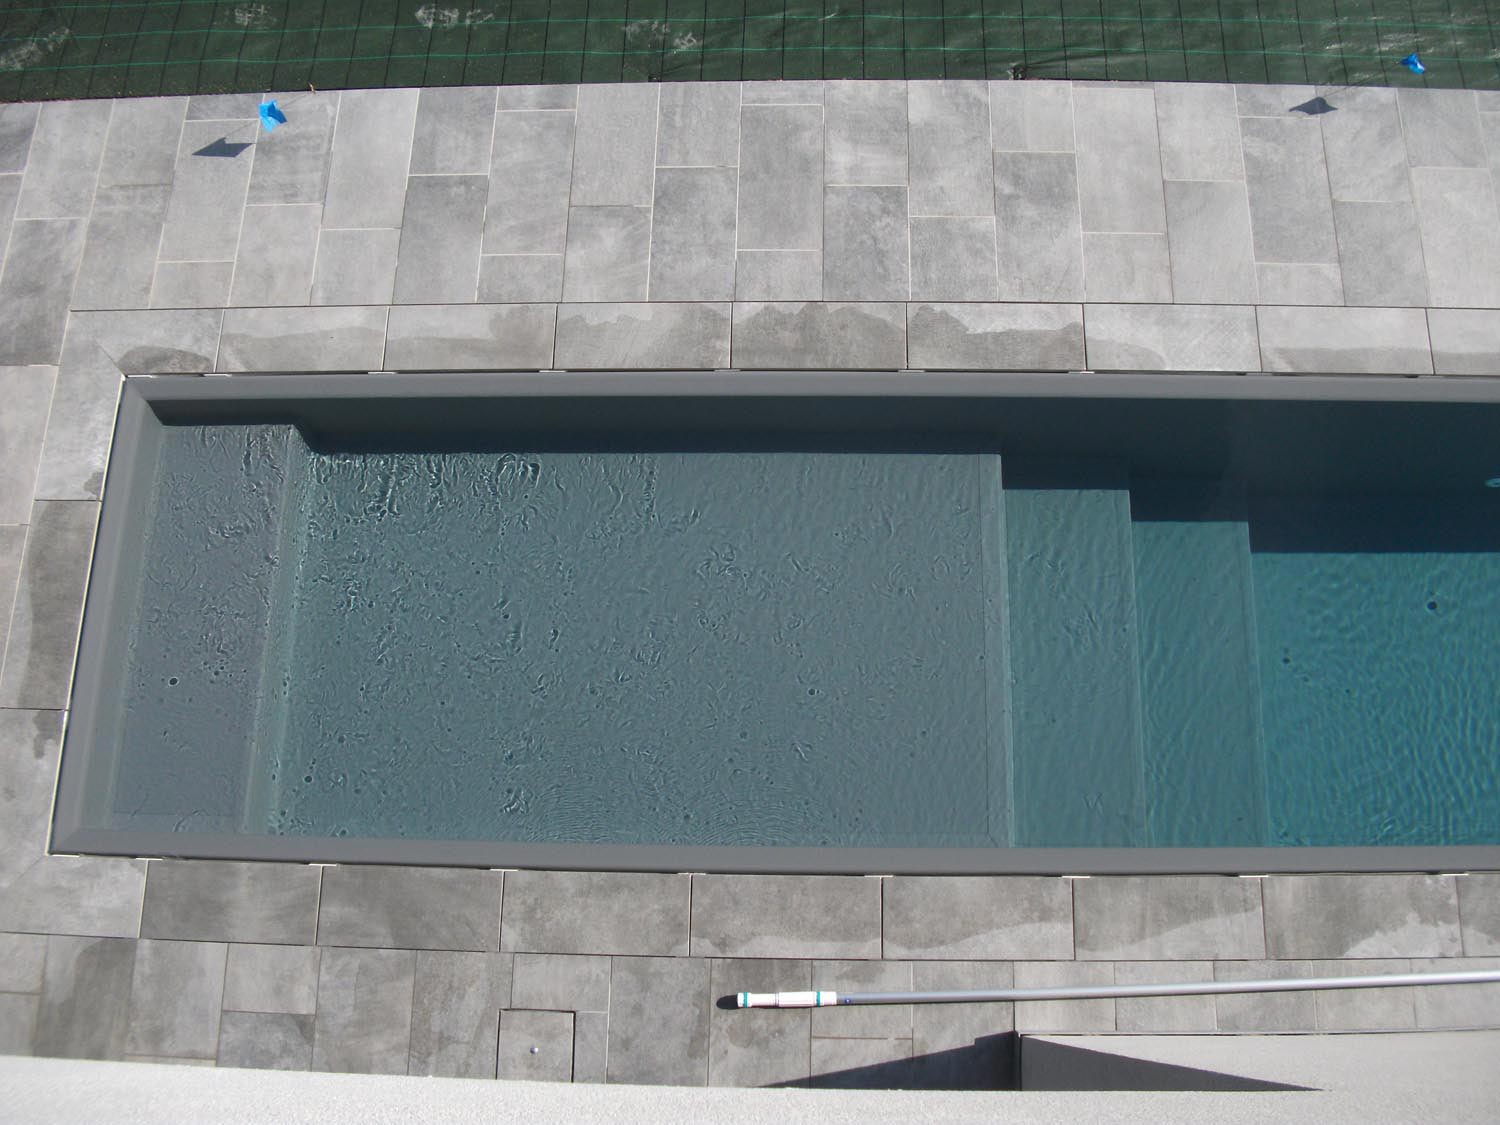 Particolare ingresso laterale di una piscina a sfioro senza vasca di compenso con sfioro a scomparsa.